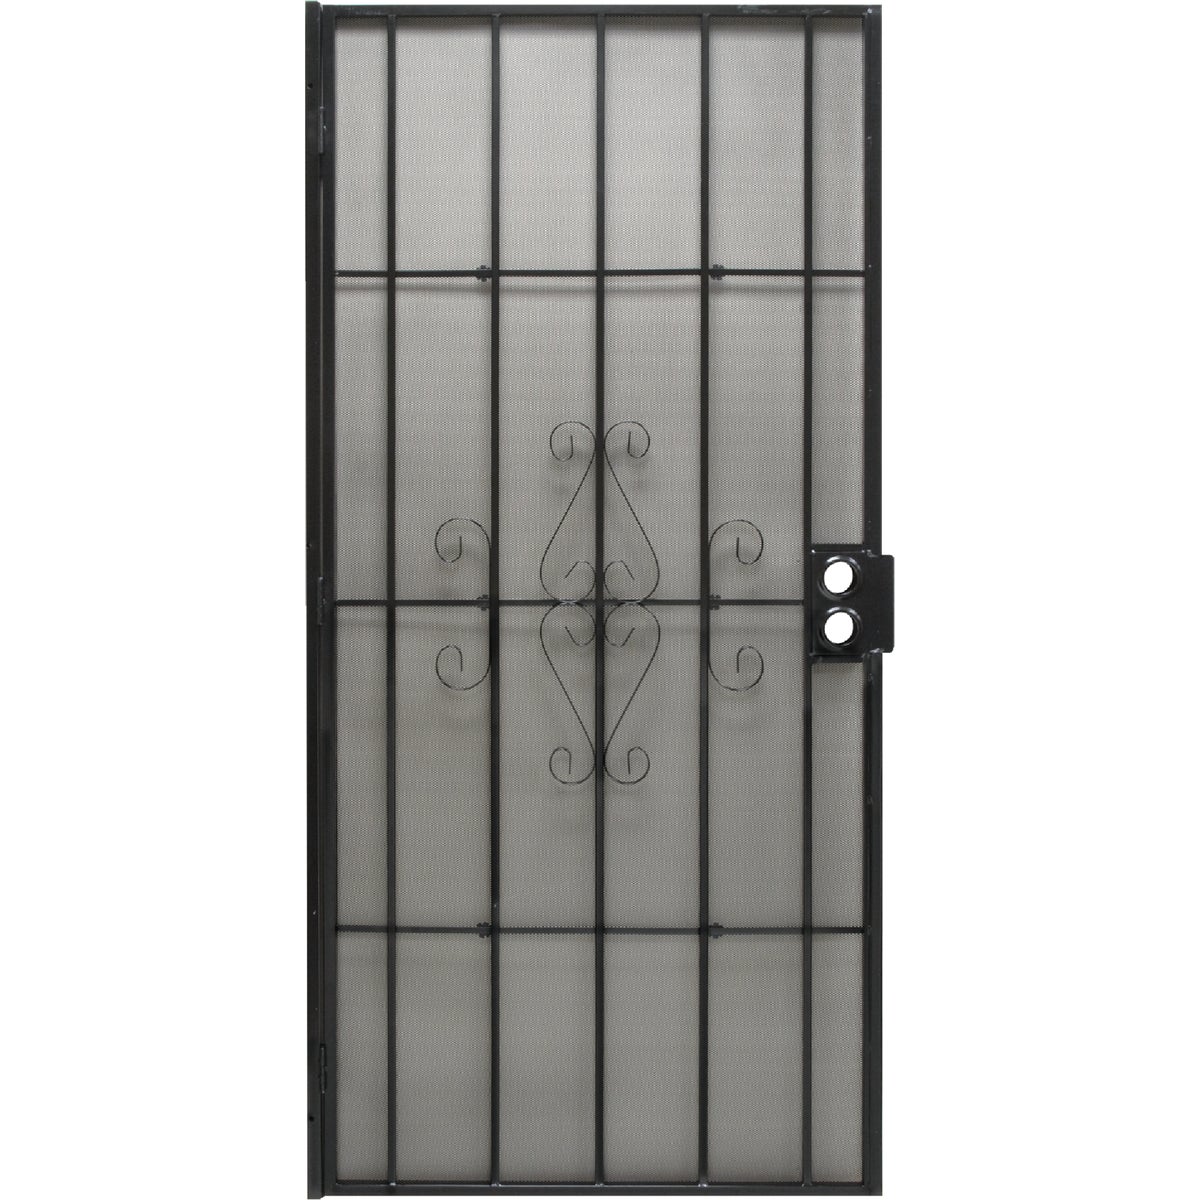 Precision Regal 32 In. W x 80 In. H Black Steel Security Door